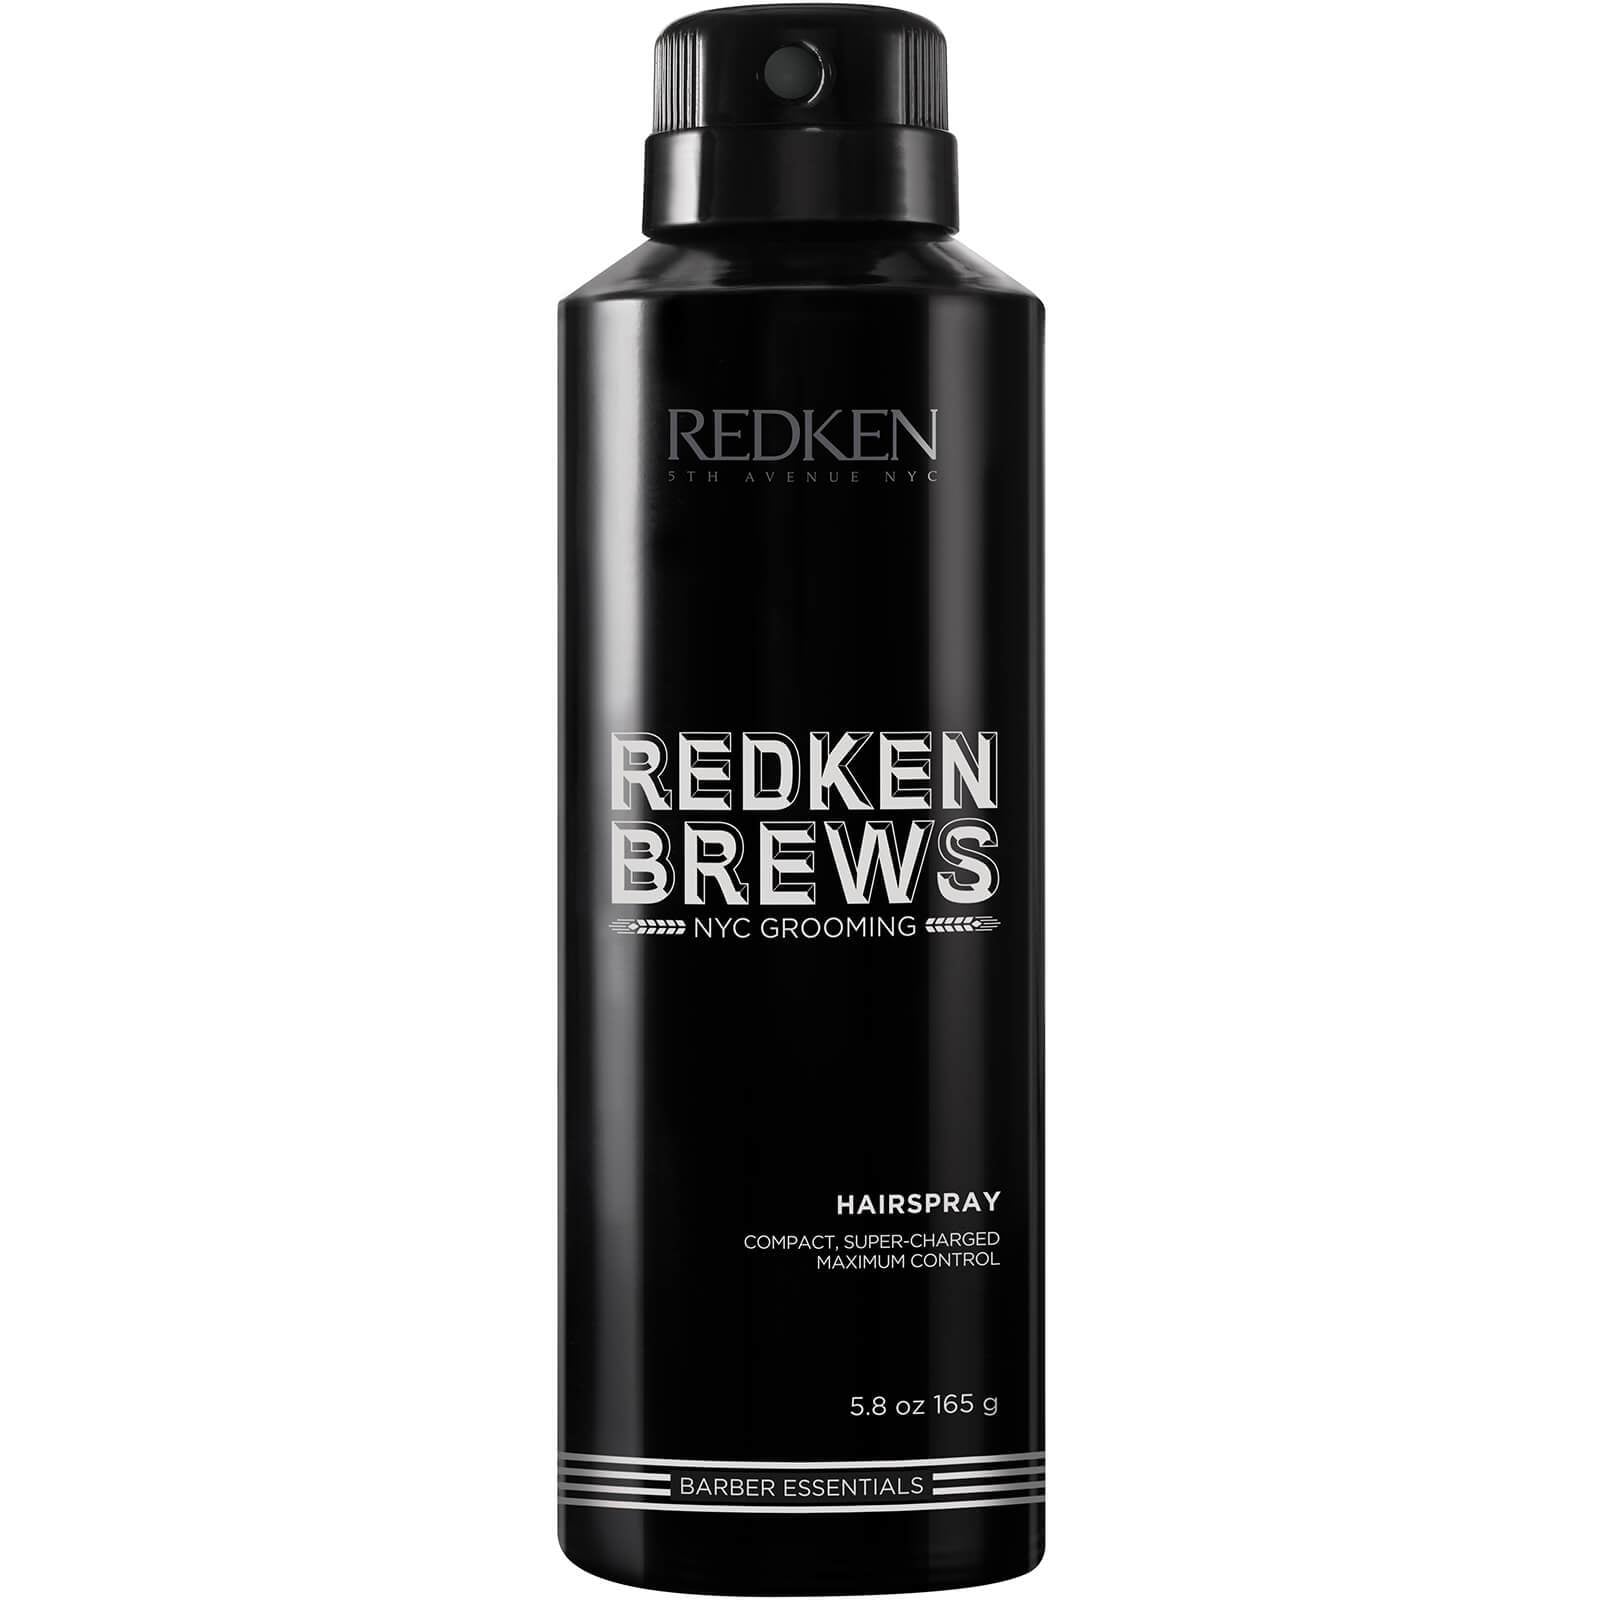 Redken Brews Hairspray 200ml (Last of Range)